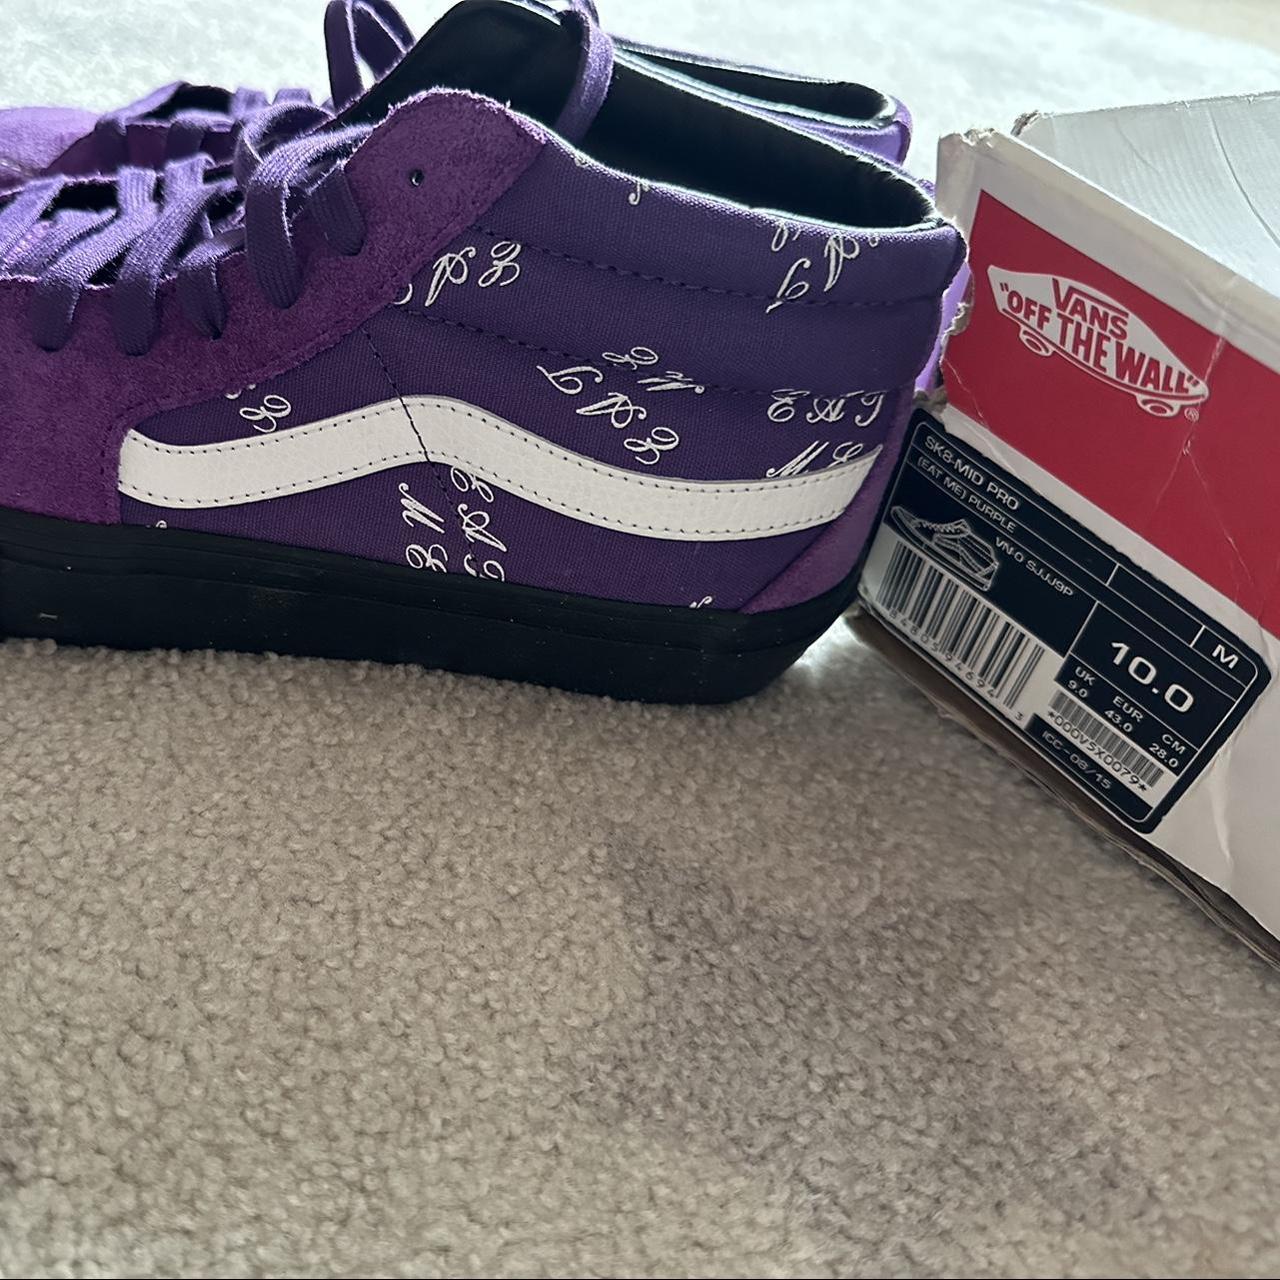 Vans X Supreme 'Eat Me' Sk8 mid top shoes in purple.... - Depop